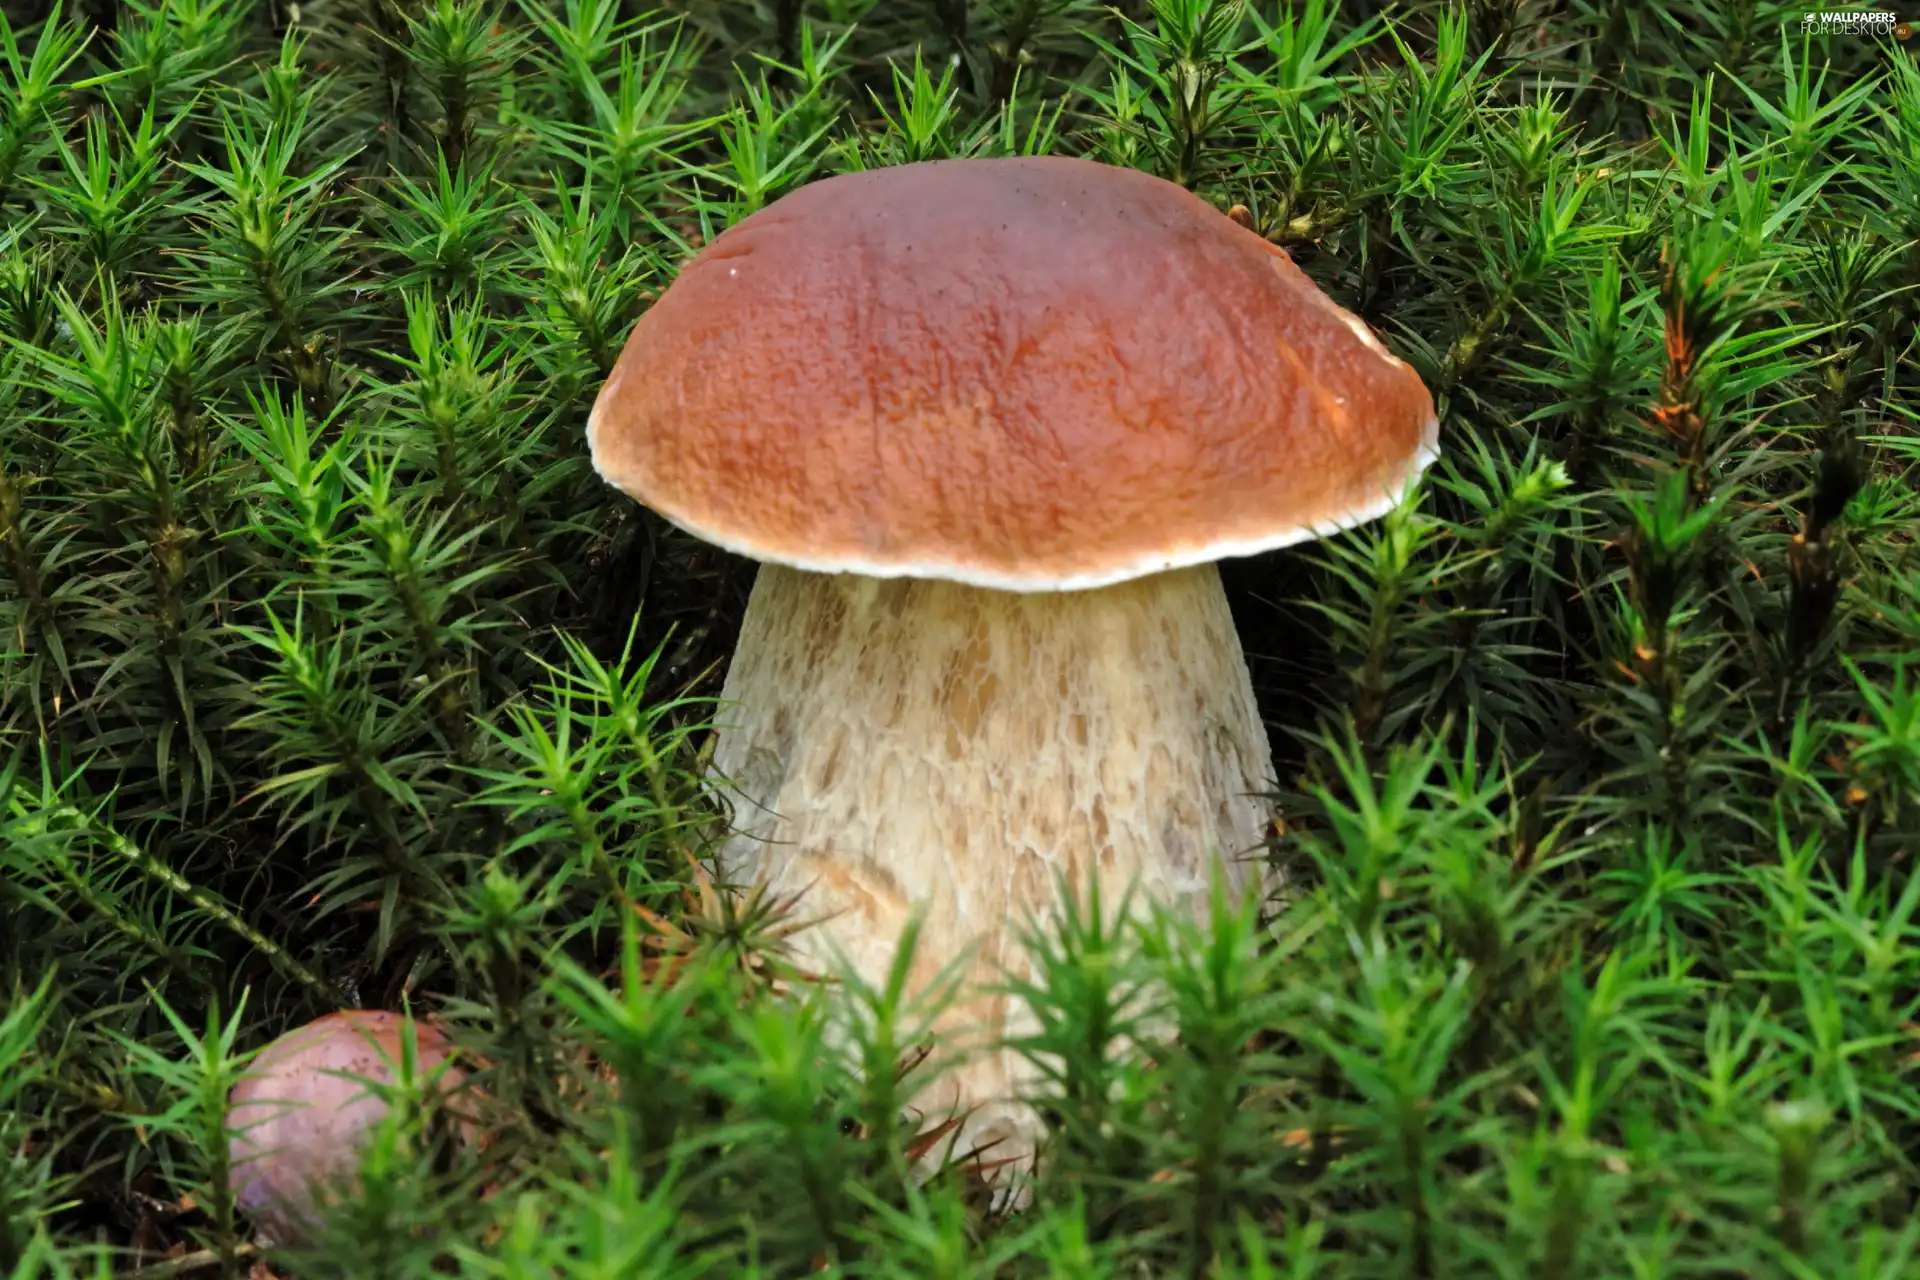 Moss, Real mushroom, boletus